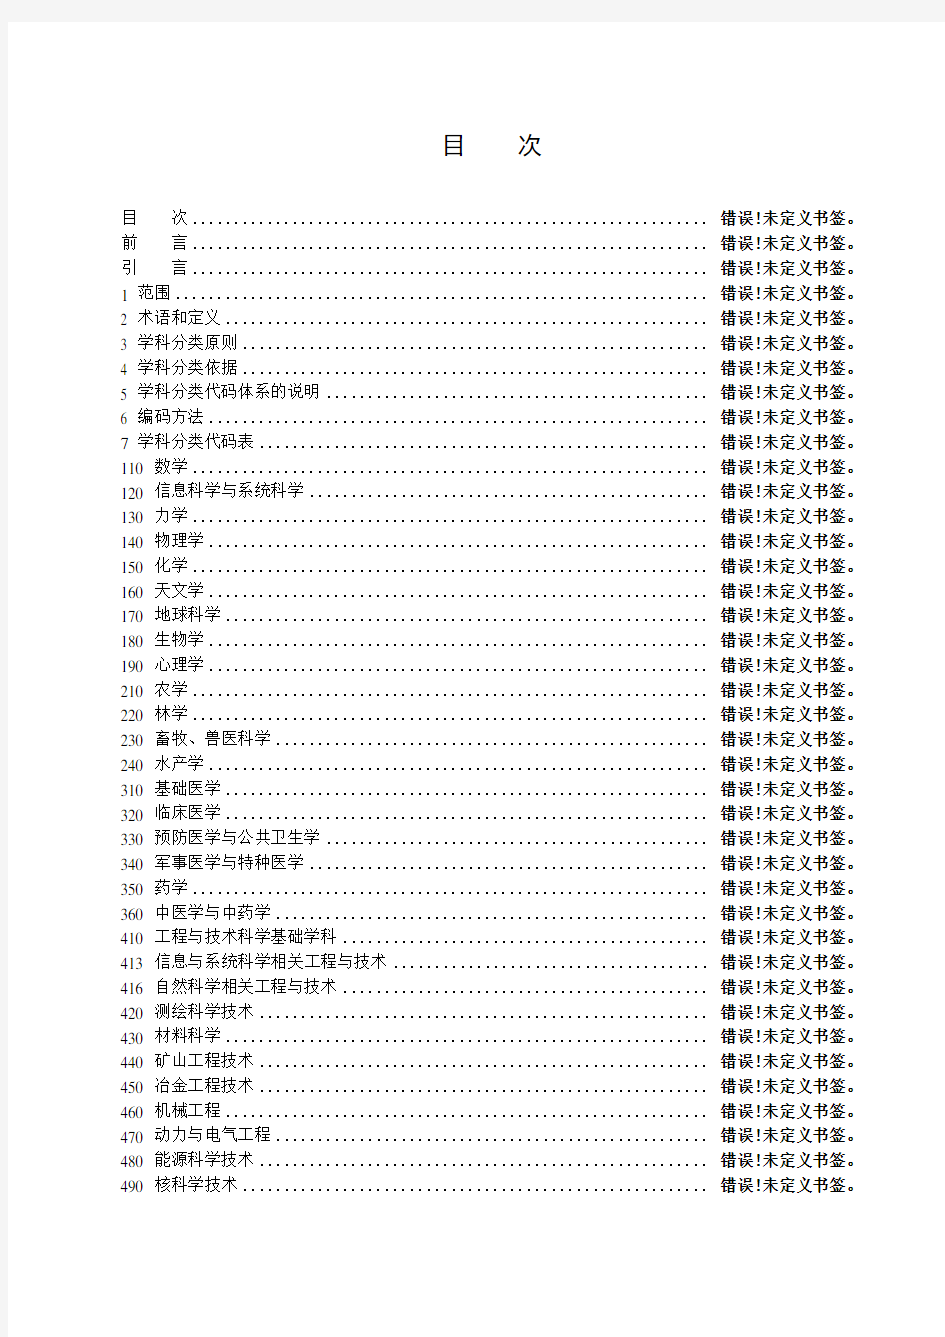 中华人民共和国学科分类与代码国家标准(GBT13745-2009)